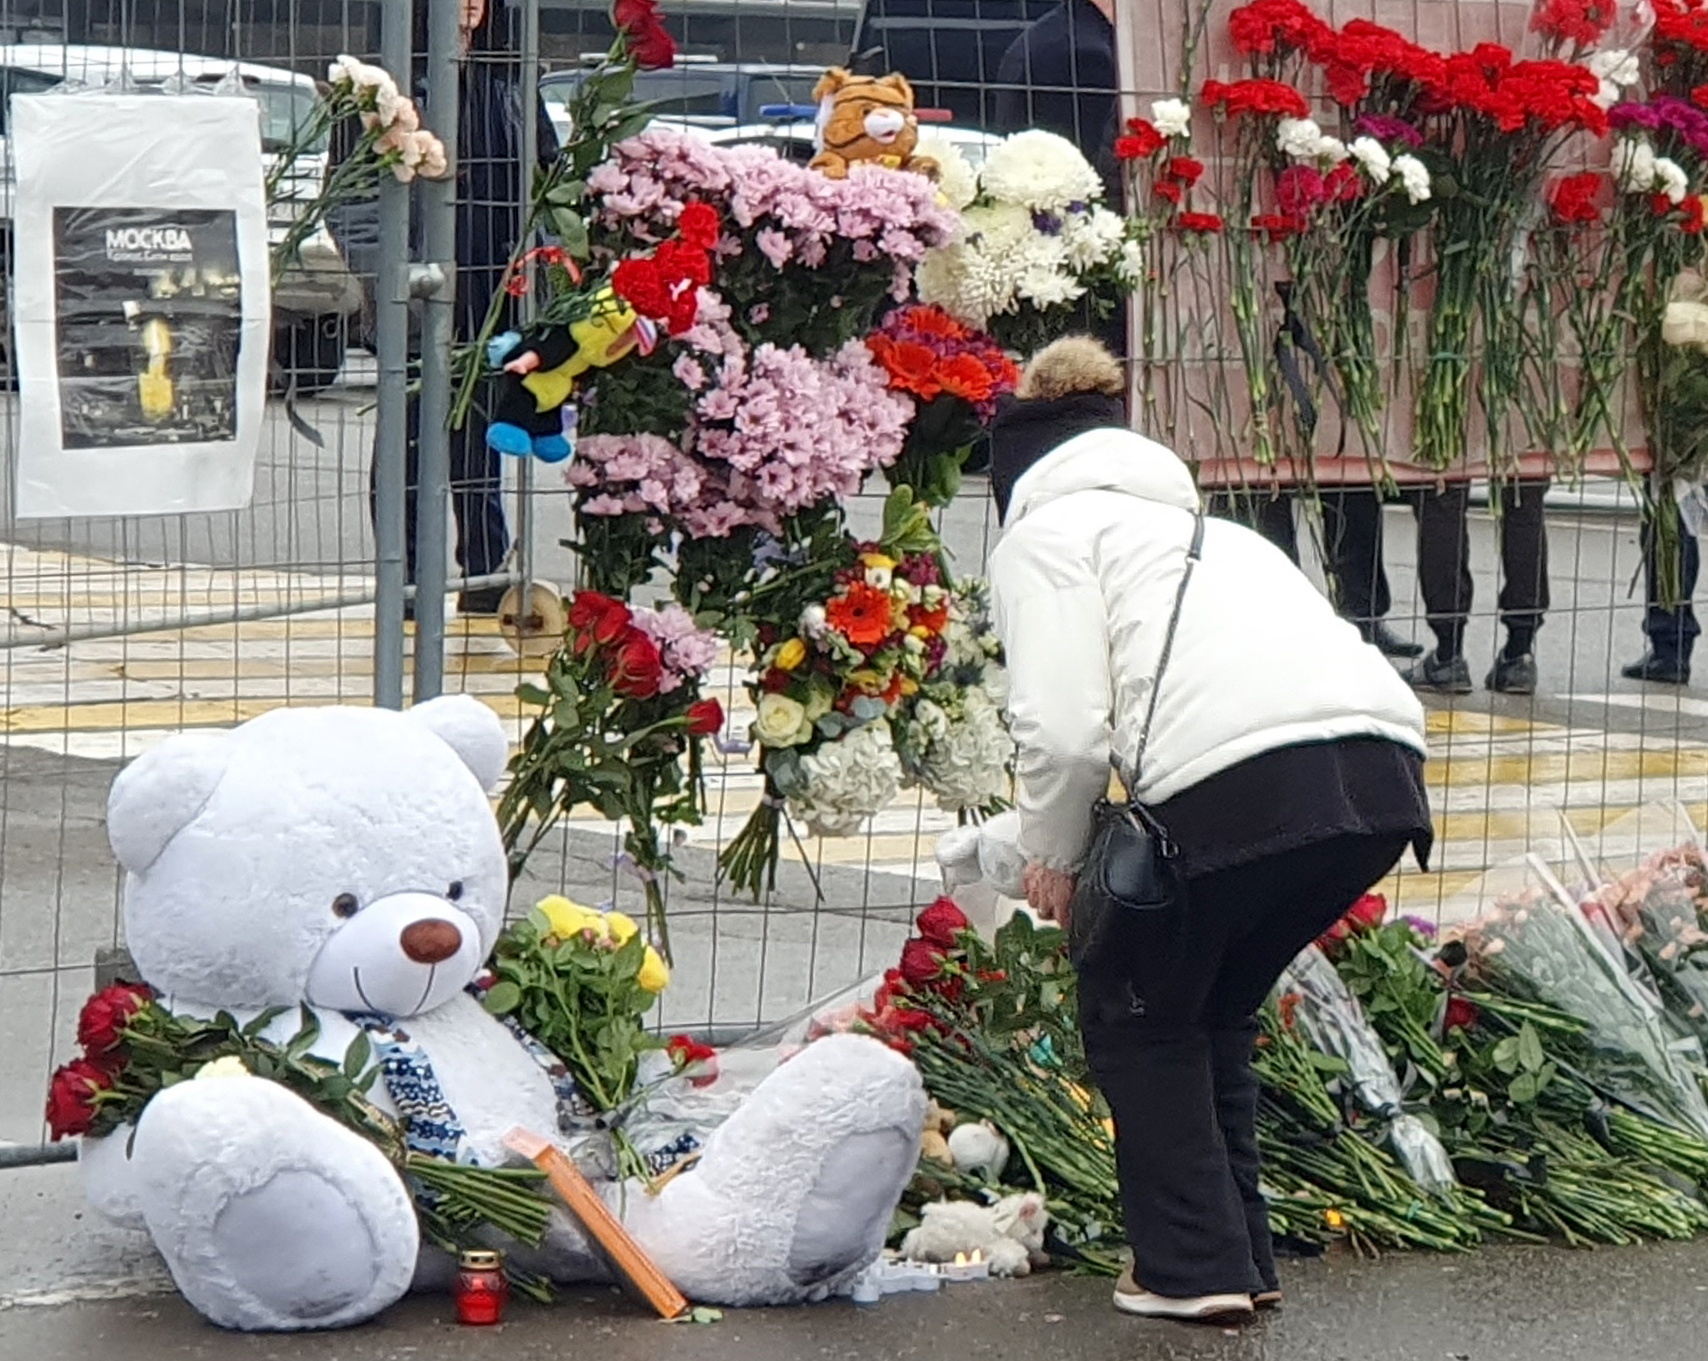 Peluches y flores para recodar a las vctimas del atentado en Krasnogorsk.